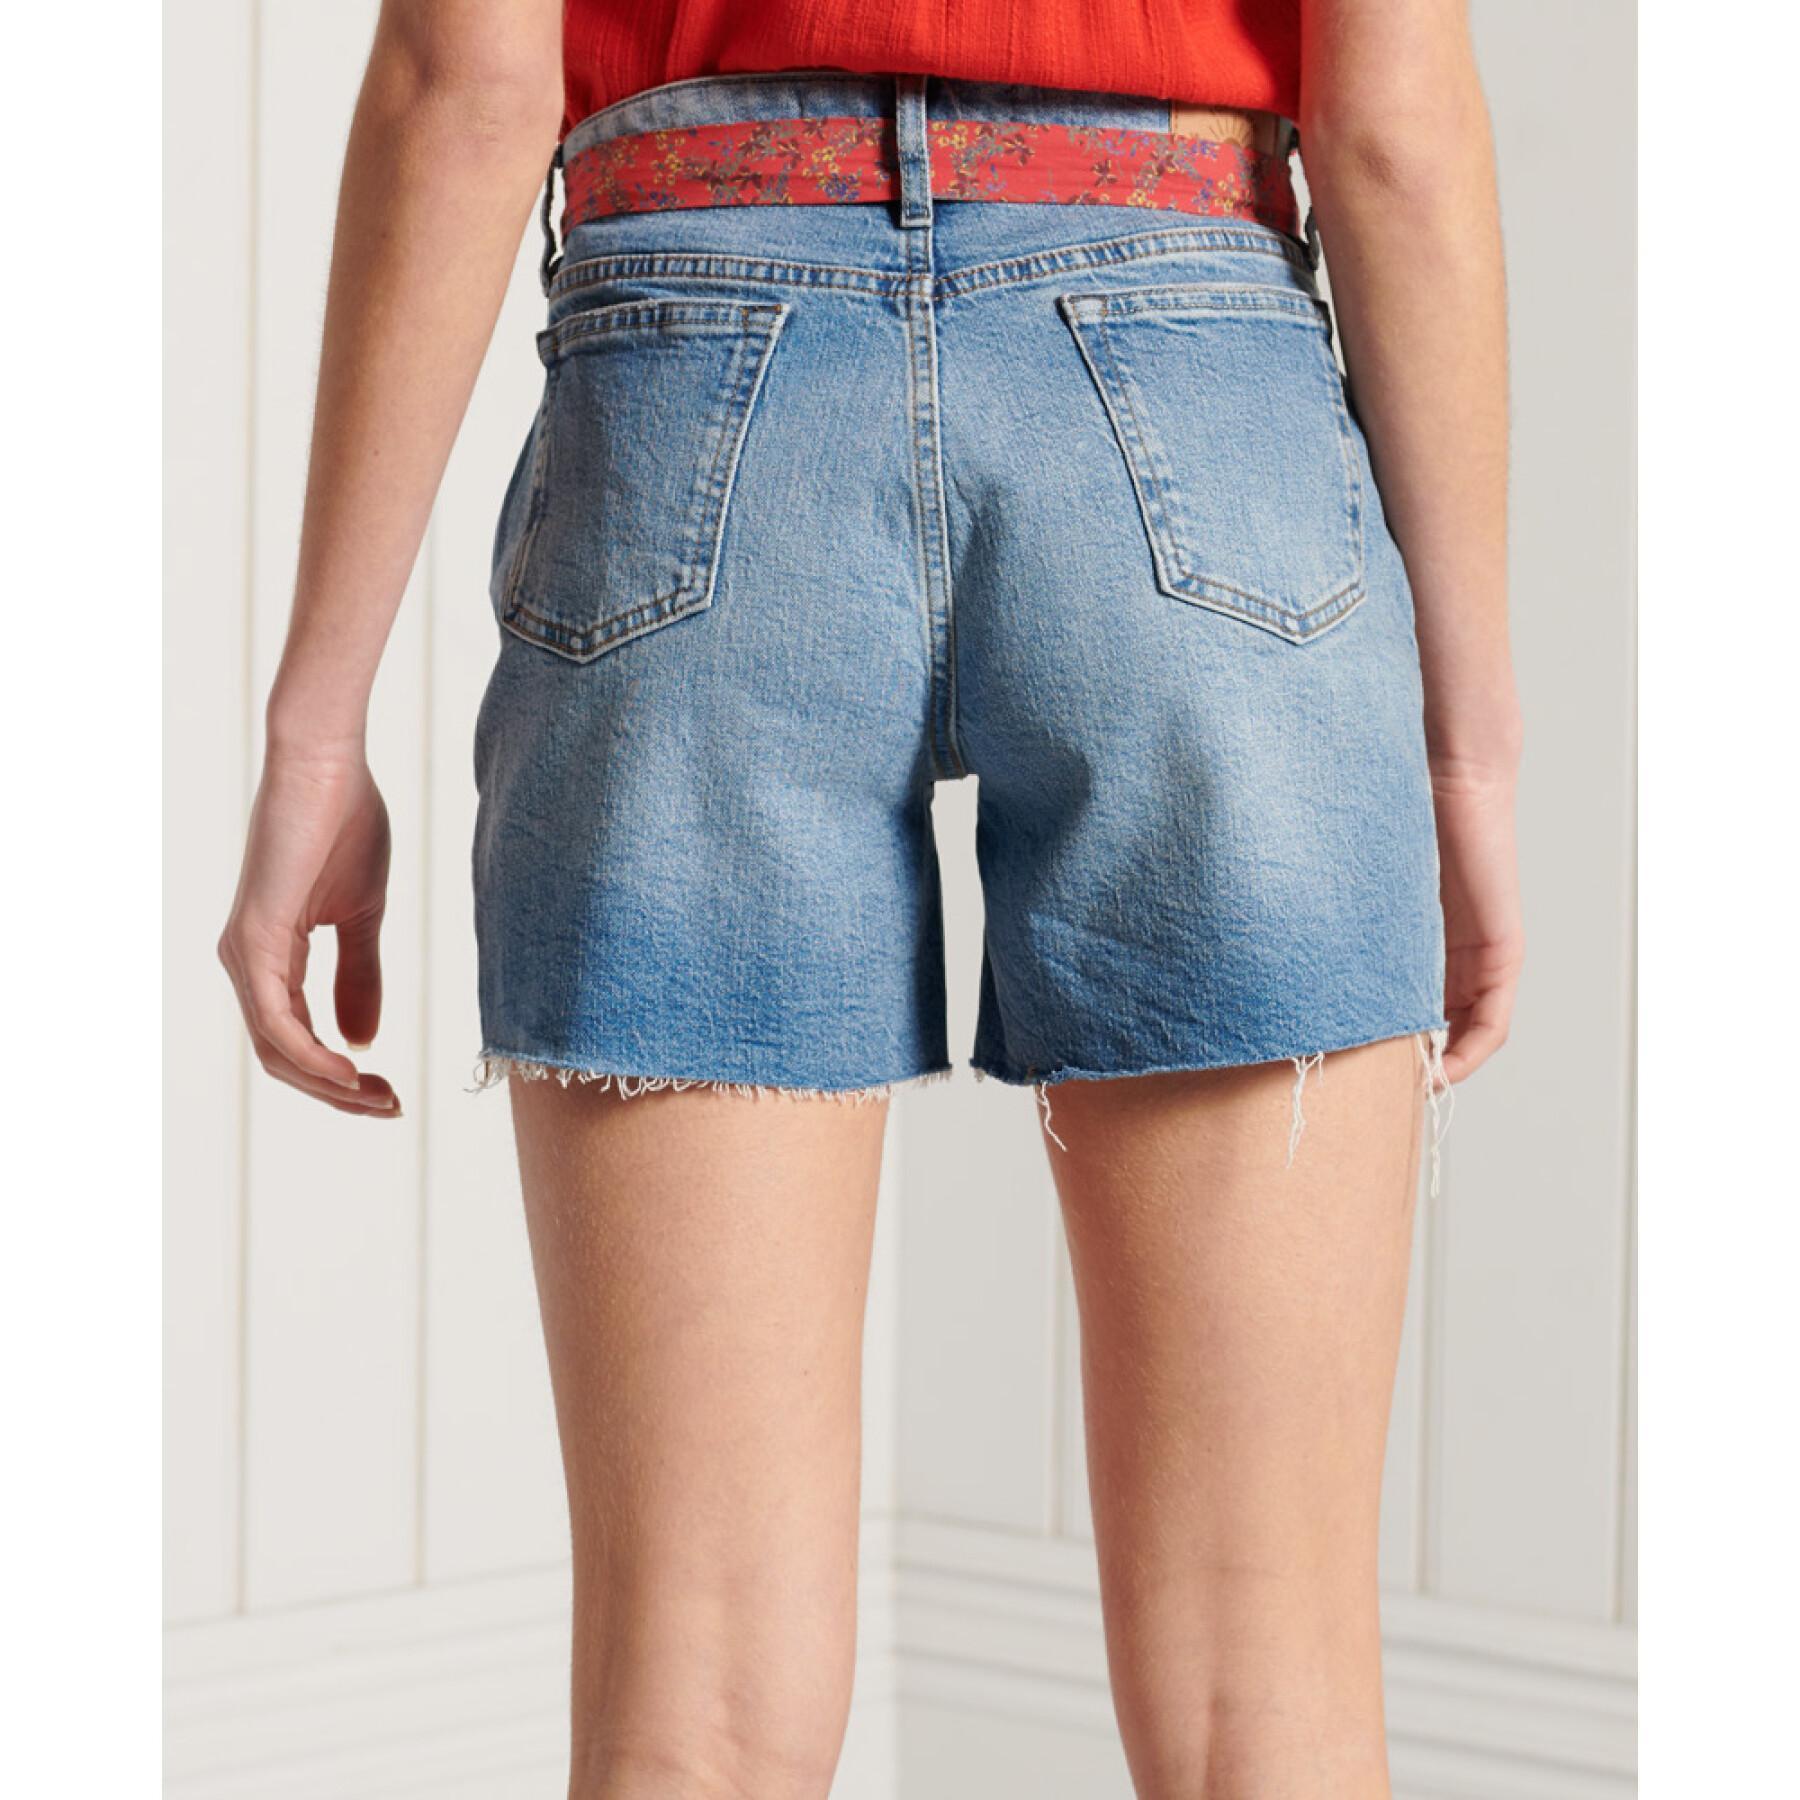 Pantalón corto slim-fit de mujer Superdry Vintage